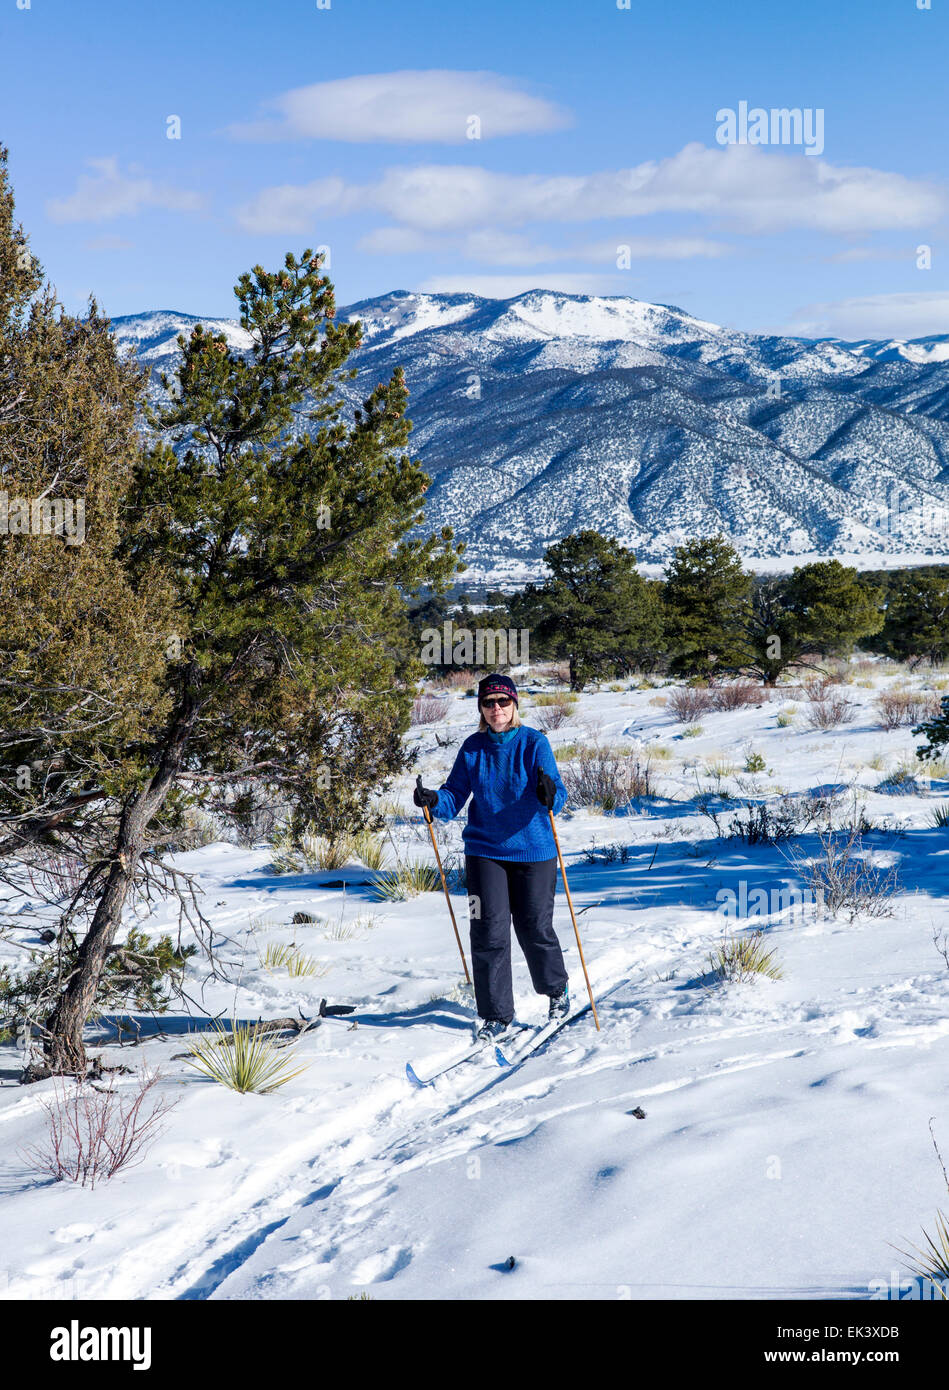 Femme ski, claire journée d'hiver, le centre du Colorado, USA Banque D'Images